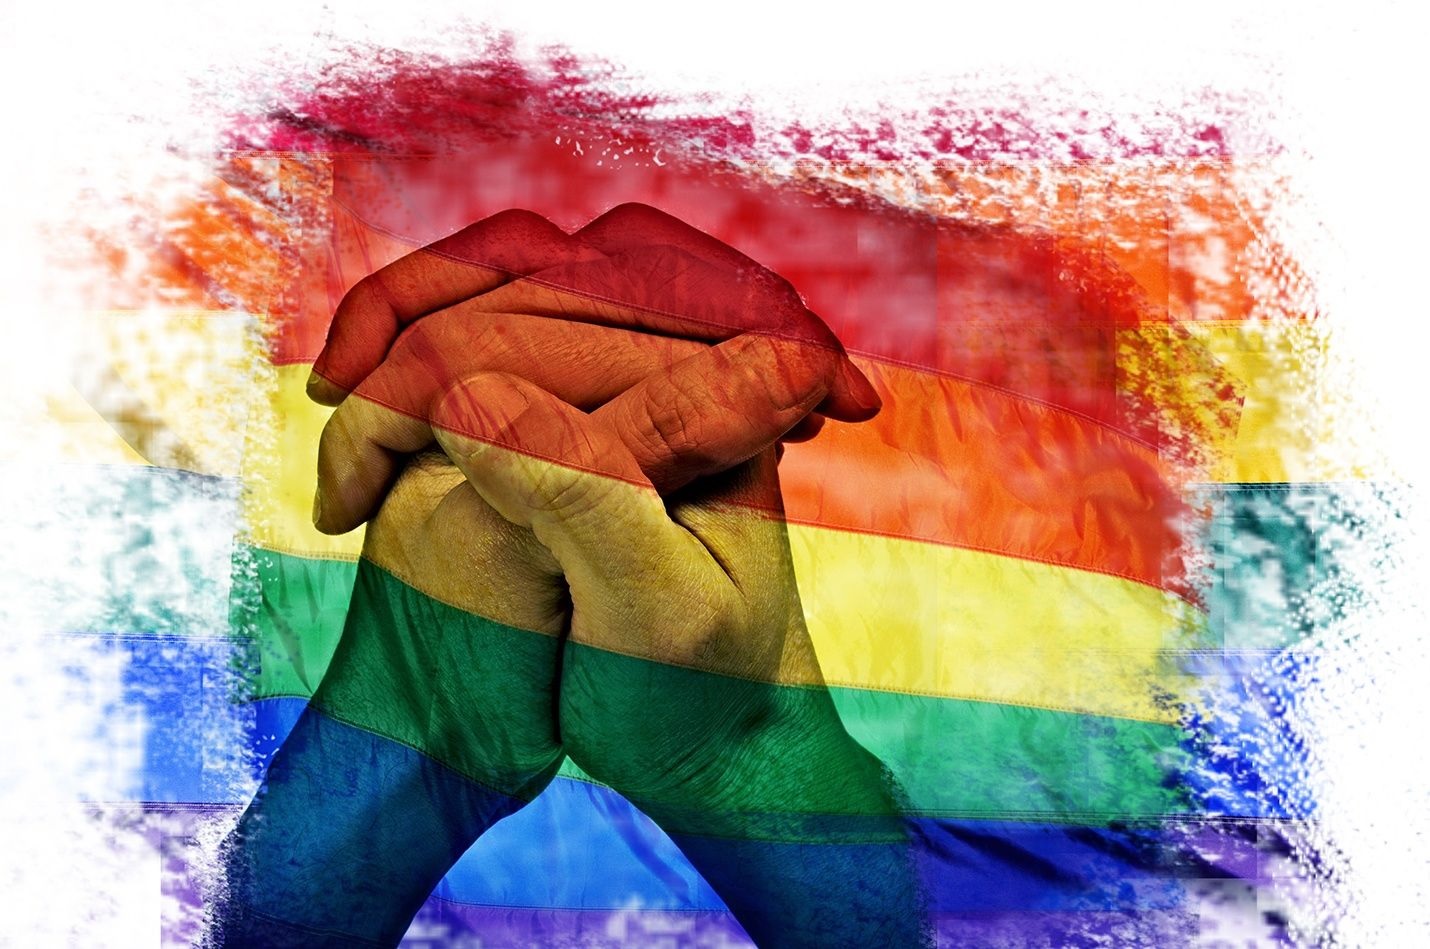 Cộng đồng LGBT Vietnam đang ngày càng phát triển và phát triển một cách tích cực. Sự đa dạng và sự chấp nhận được đẩy mạnh, đem đến cho tất cả mọi người sự yêu thương và ủng hộ. Hãy tham gia vào cộng đồng LGBT Vietnam để trải nghiệm những giá trị tuyệt vời này, và làm cho thế giới trở nên tốt đẹp hơn.